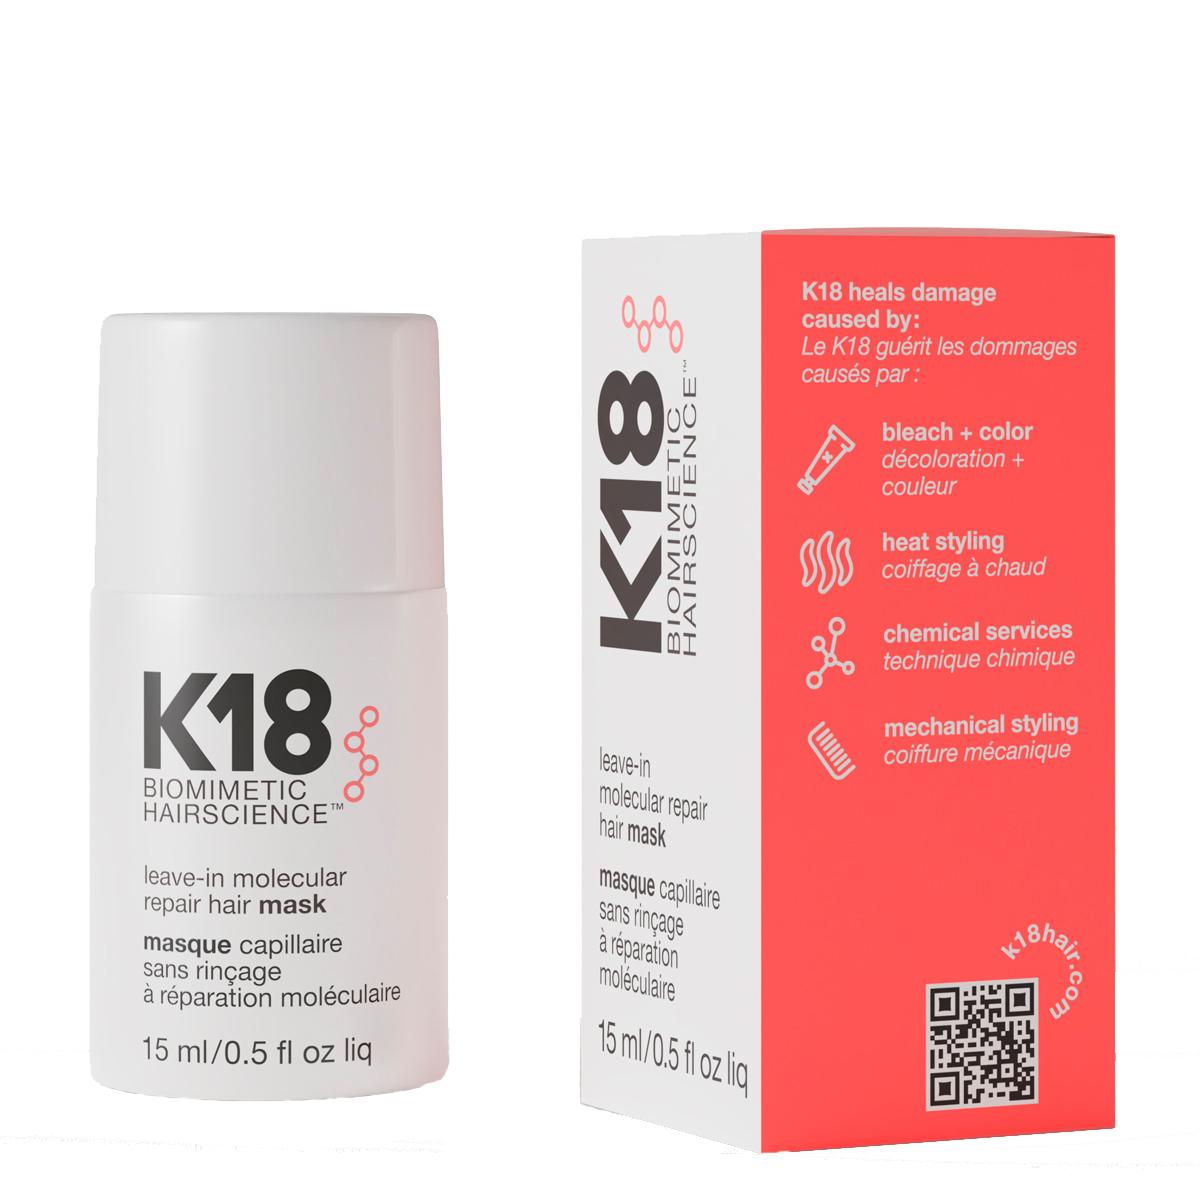 K18 маска несмываемая для молекулярного восстановления волос, 5 мл. Уход к18. Маска для волос молекулярное восстановление